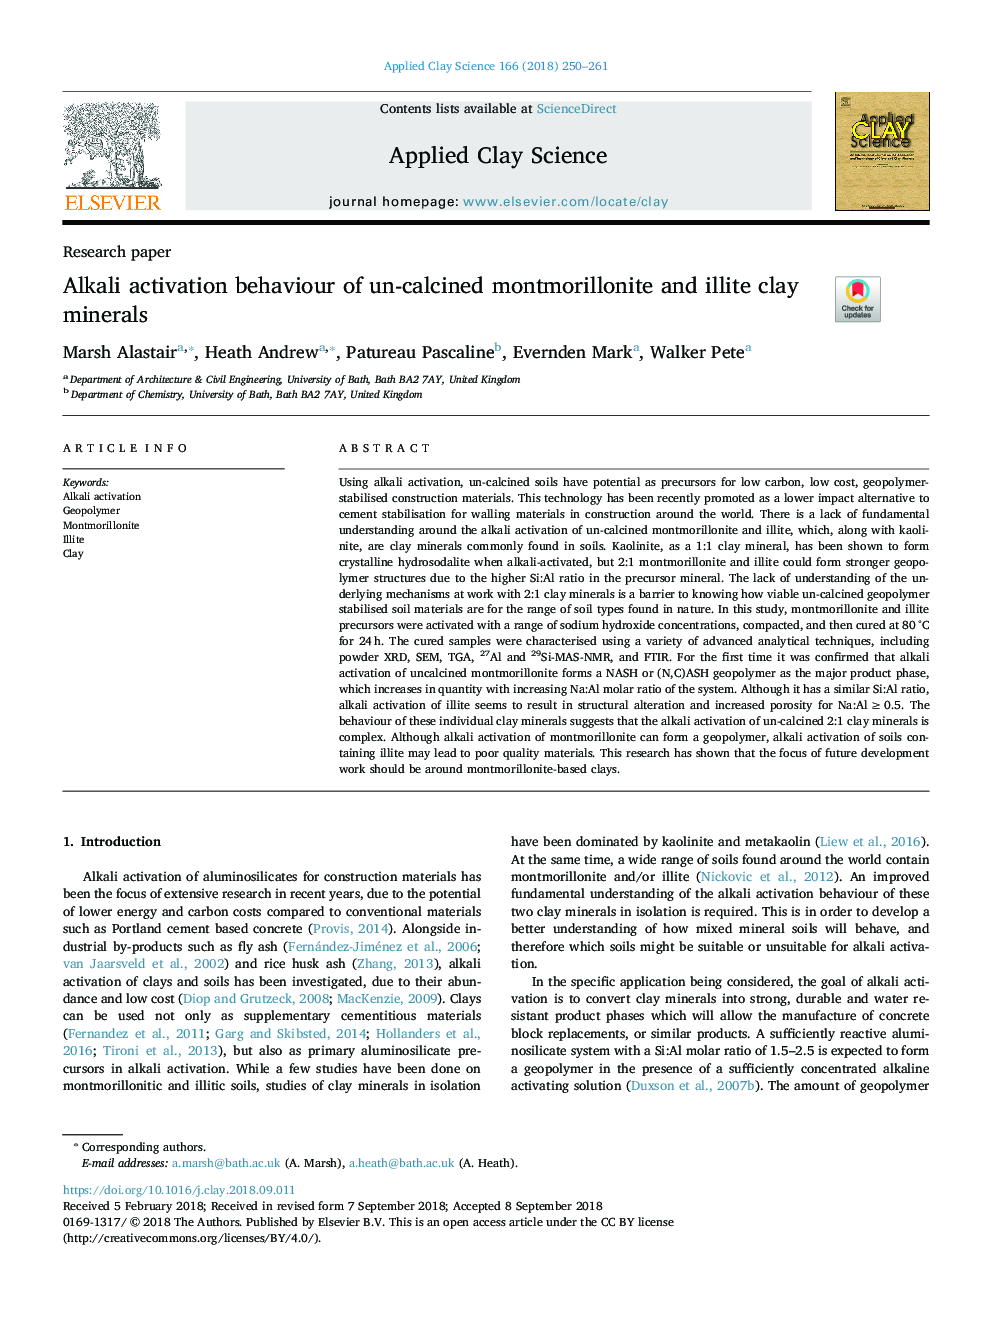 رفتار فعال سازی قلیایی از مونتموریلونیت غیر کک شده و مواد معدنی خاک رس